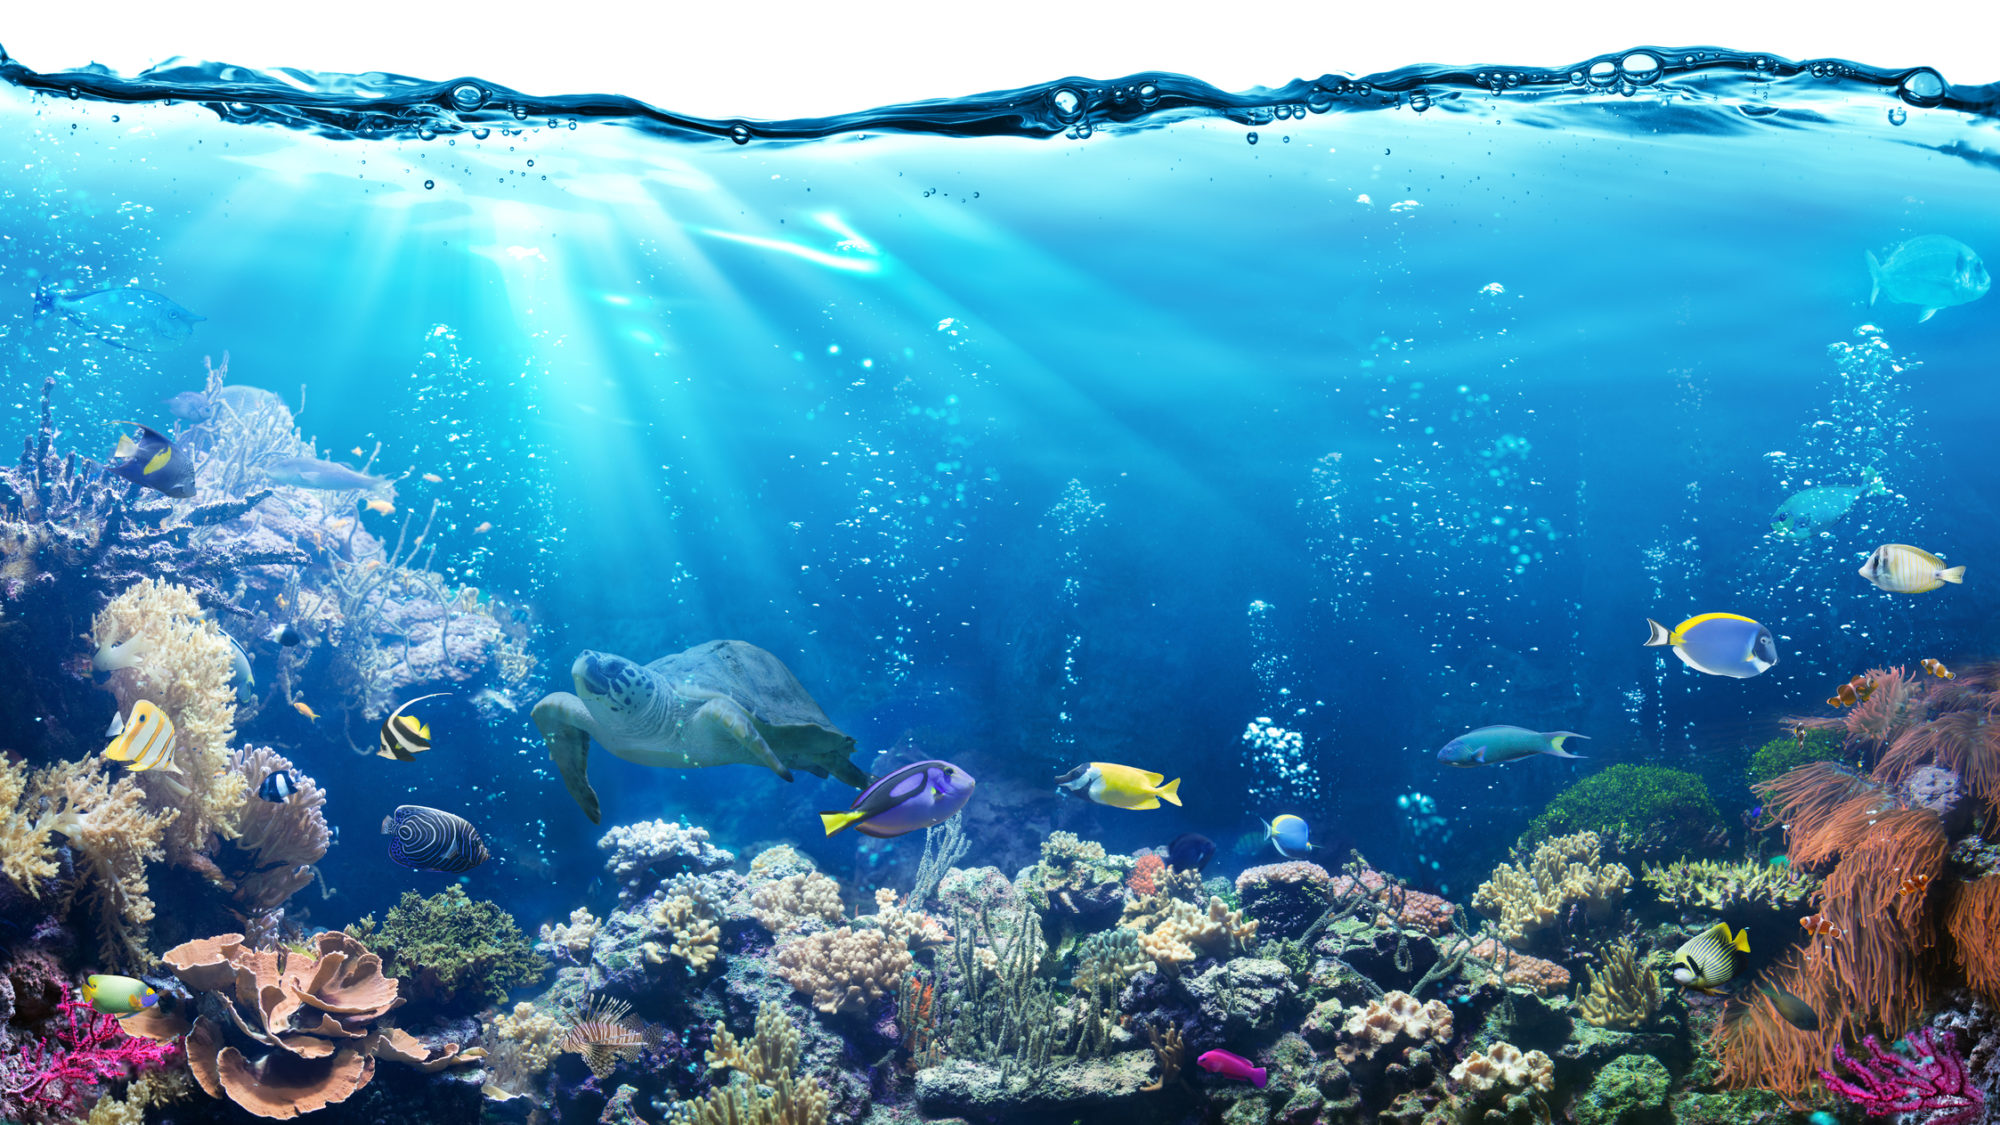 O que juntos podemos fazer para preservar os oceanos